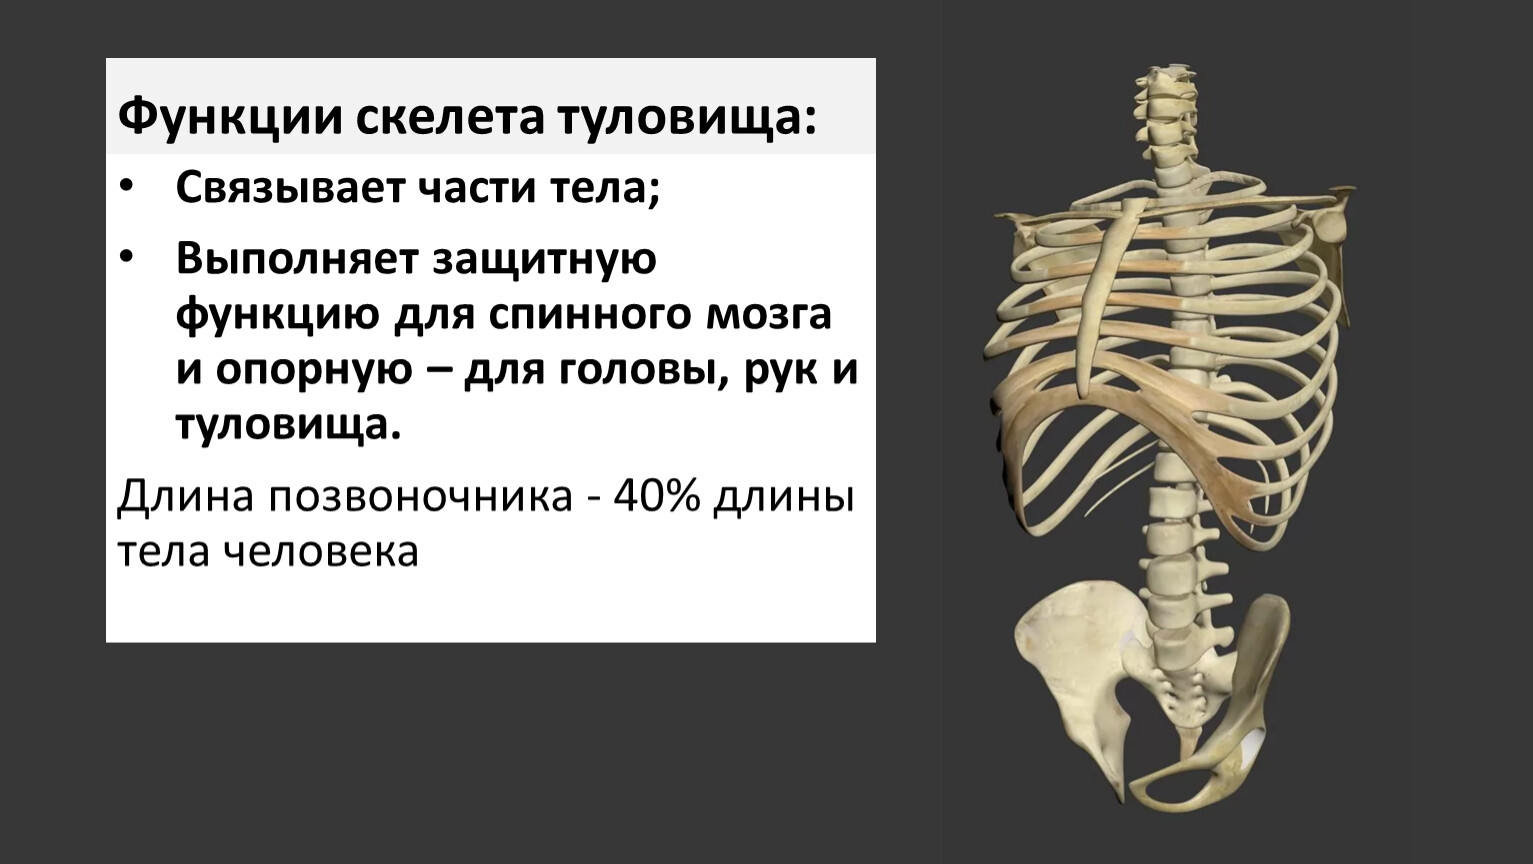 Основа внутреннего скелета. Скелет туловища. Скелет туловища человека. Функции осевого скелета. Скелет туловища спинной мозг.